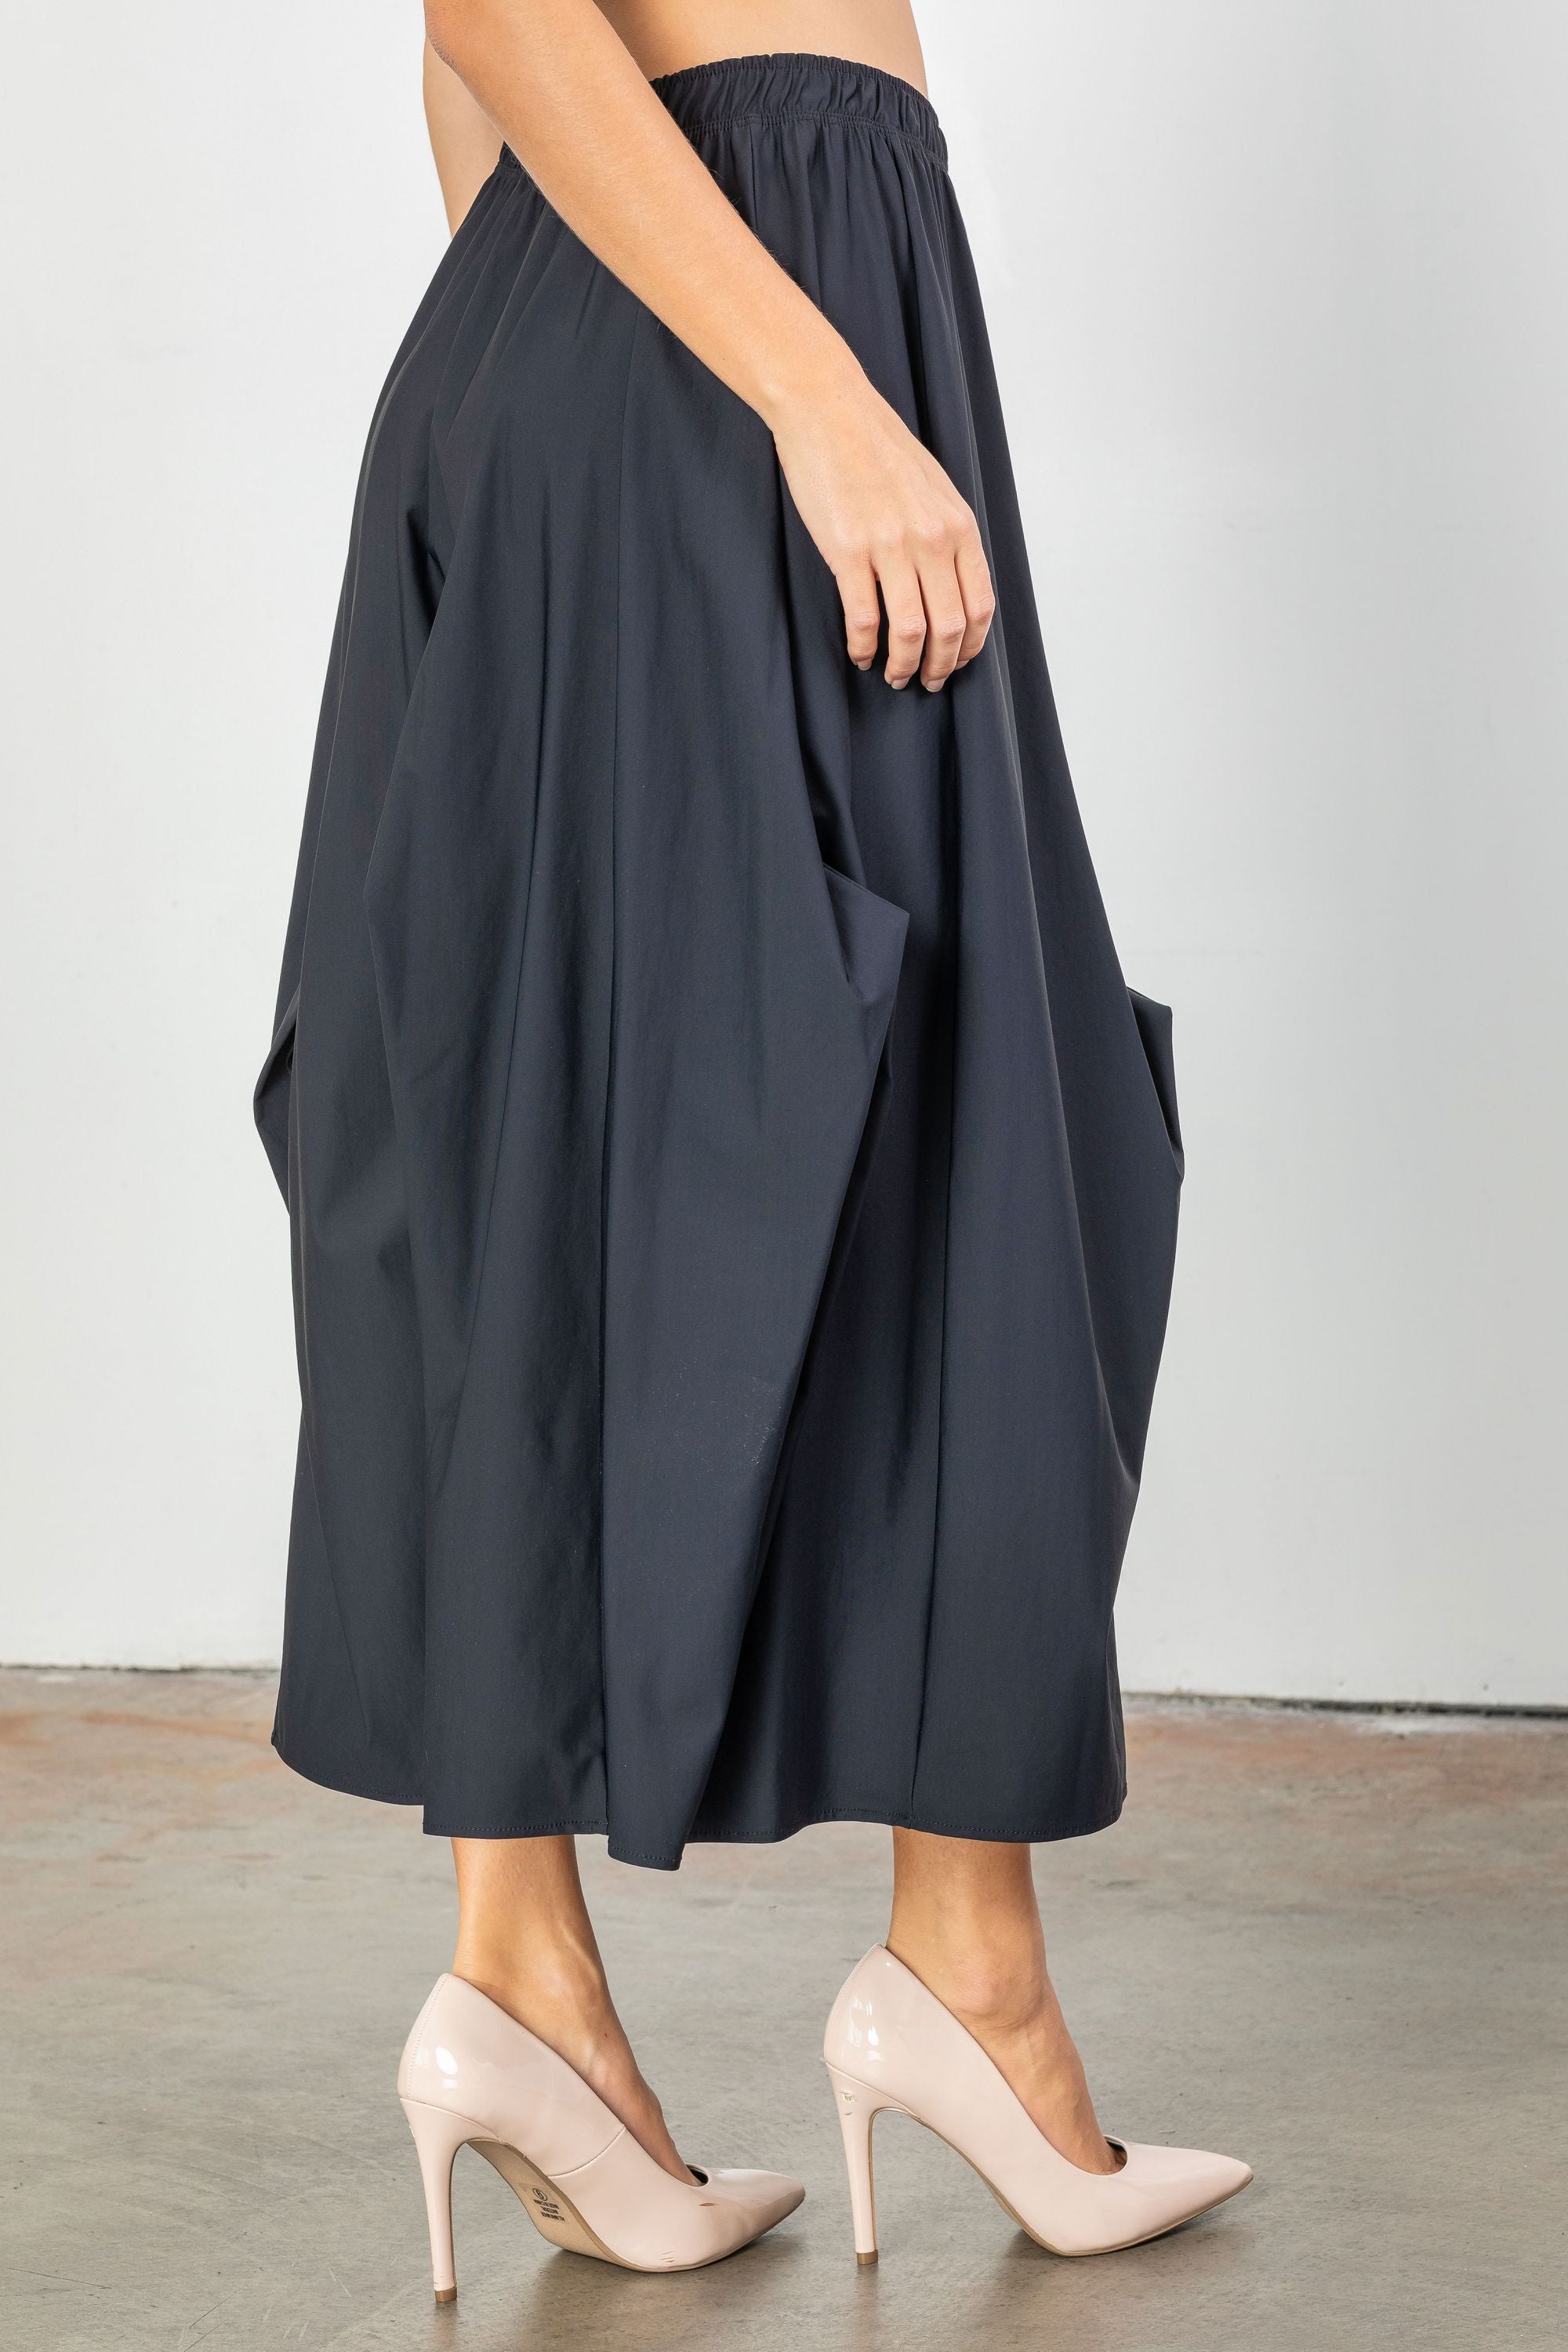 Black Asymmetric Line Folds Skirt